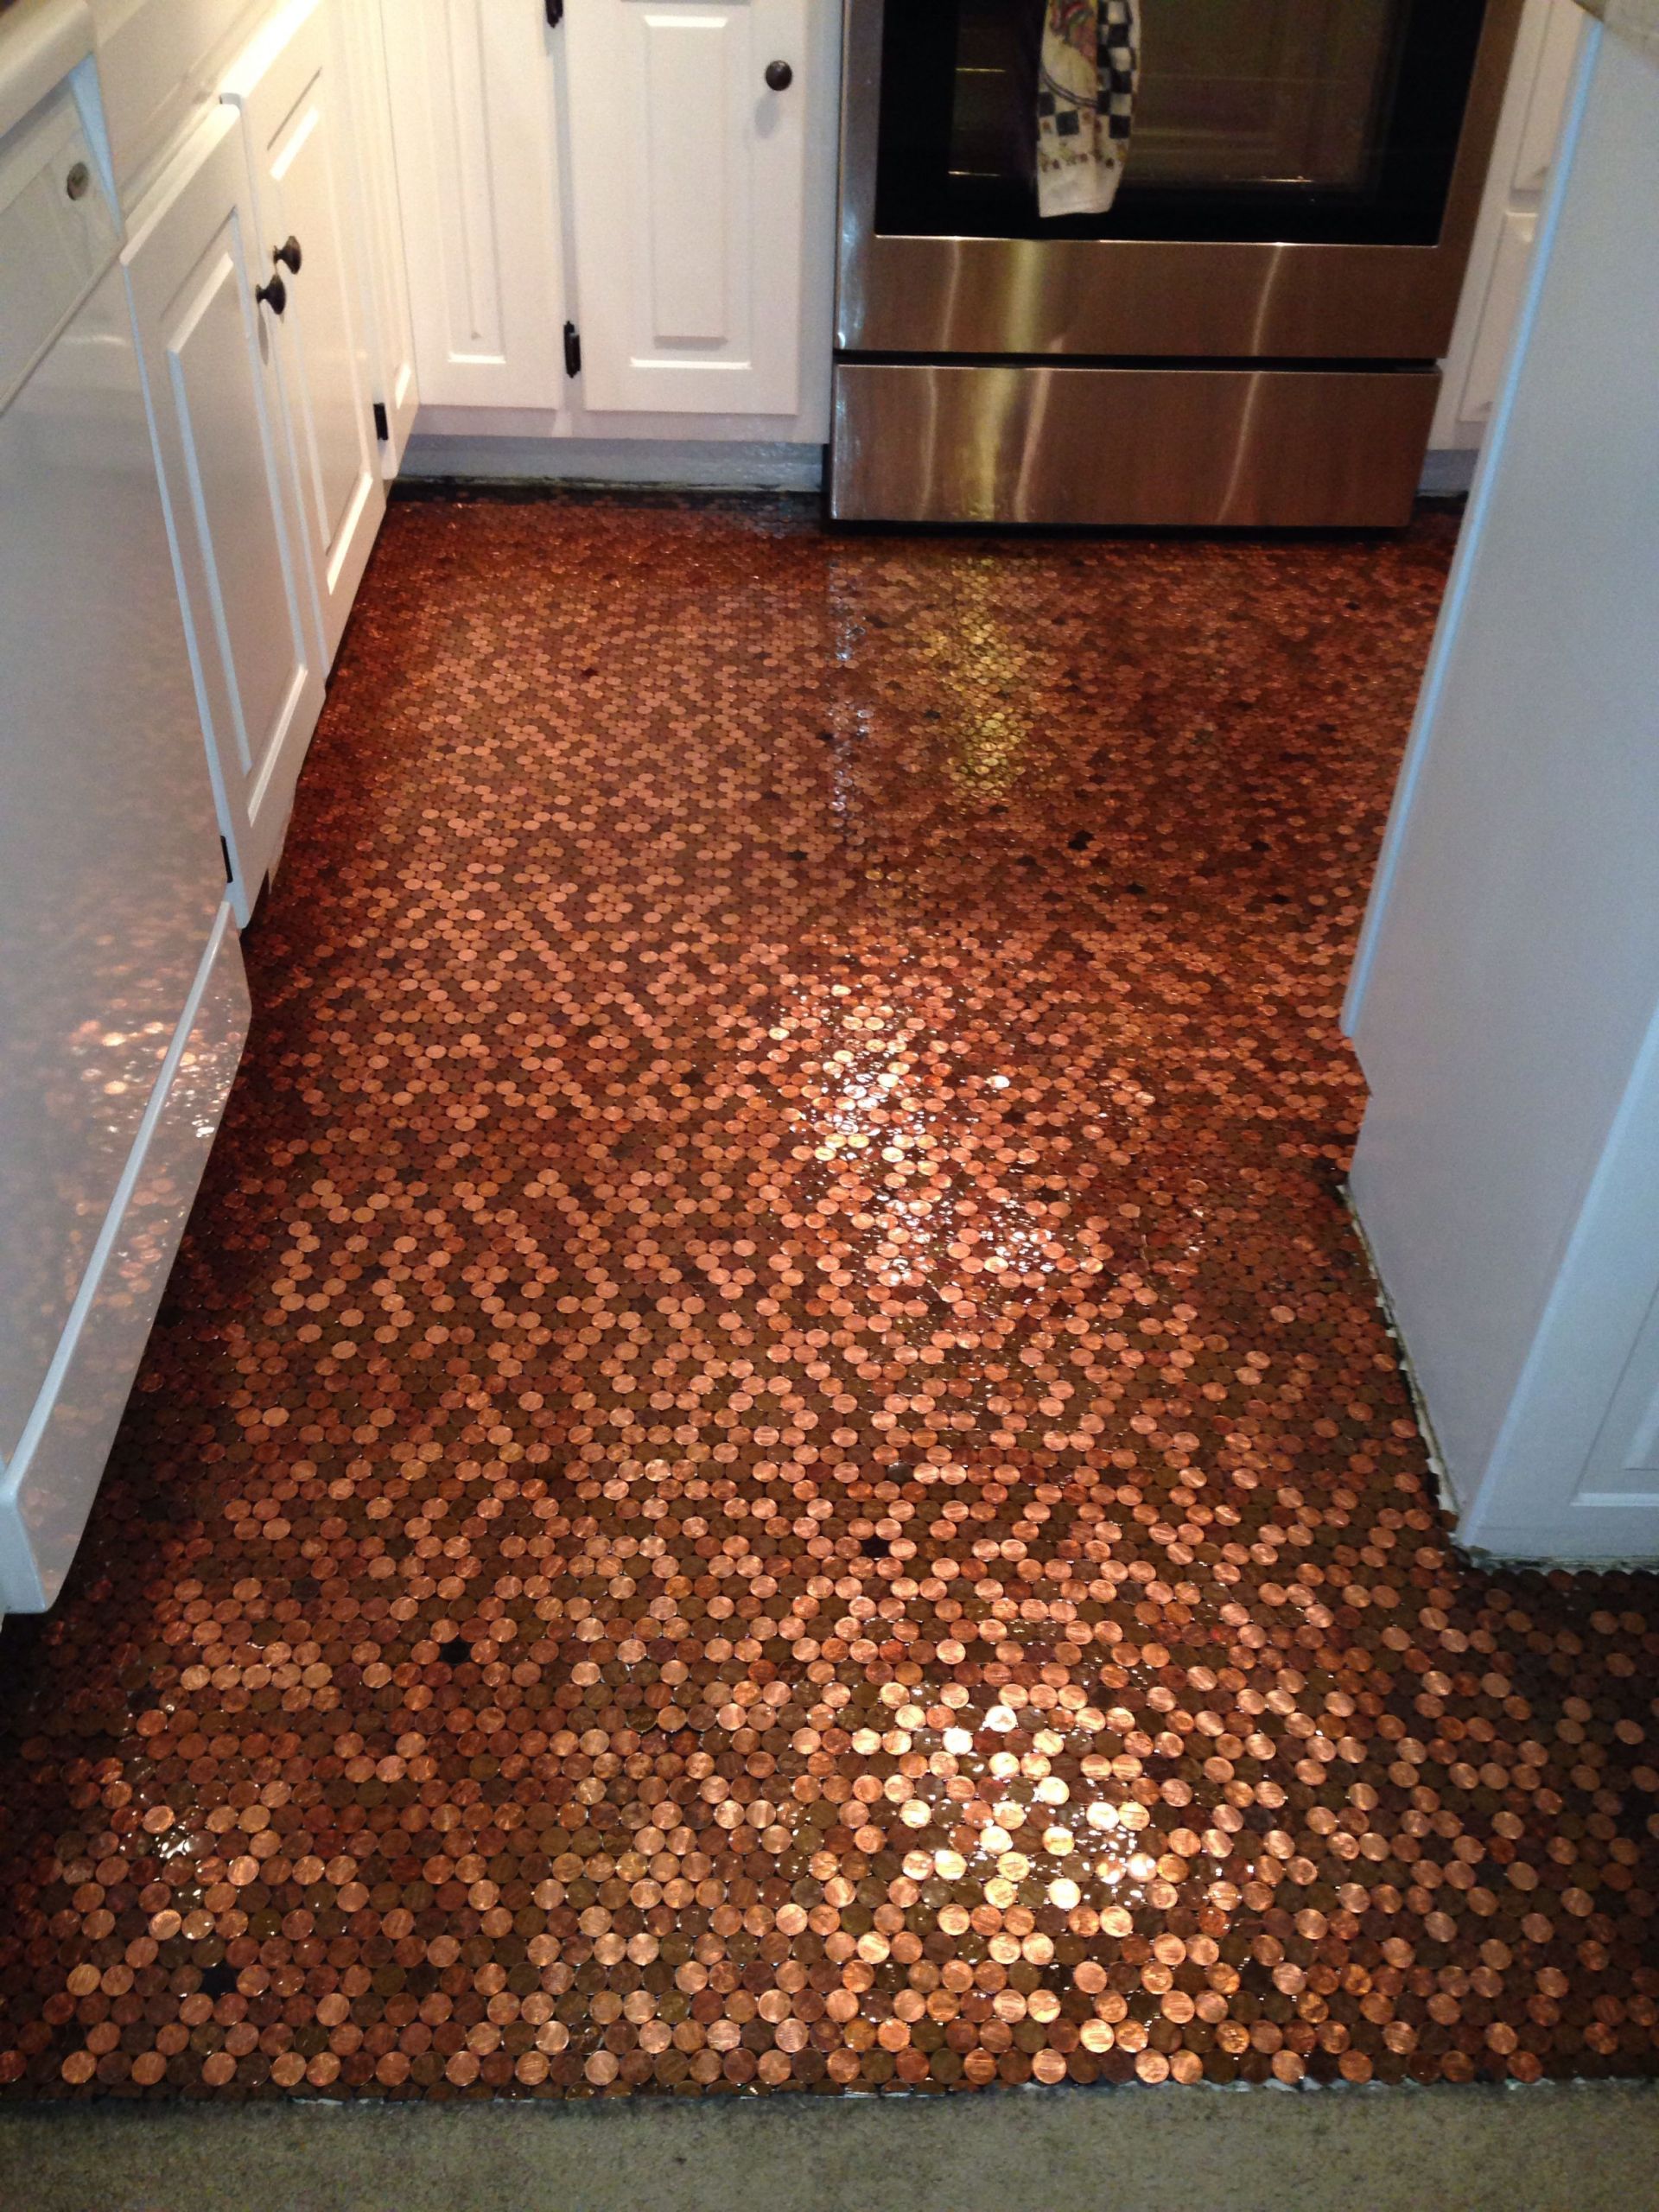 Kitchen Floor Made Of Pennies
 My penny floor